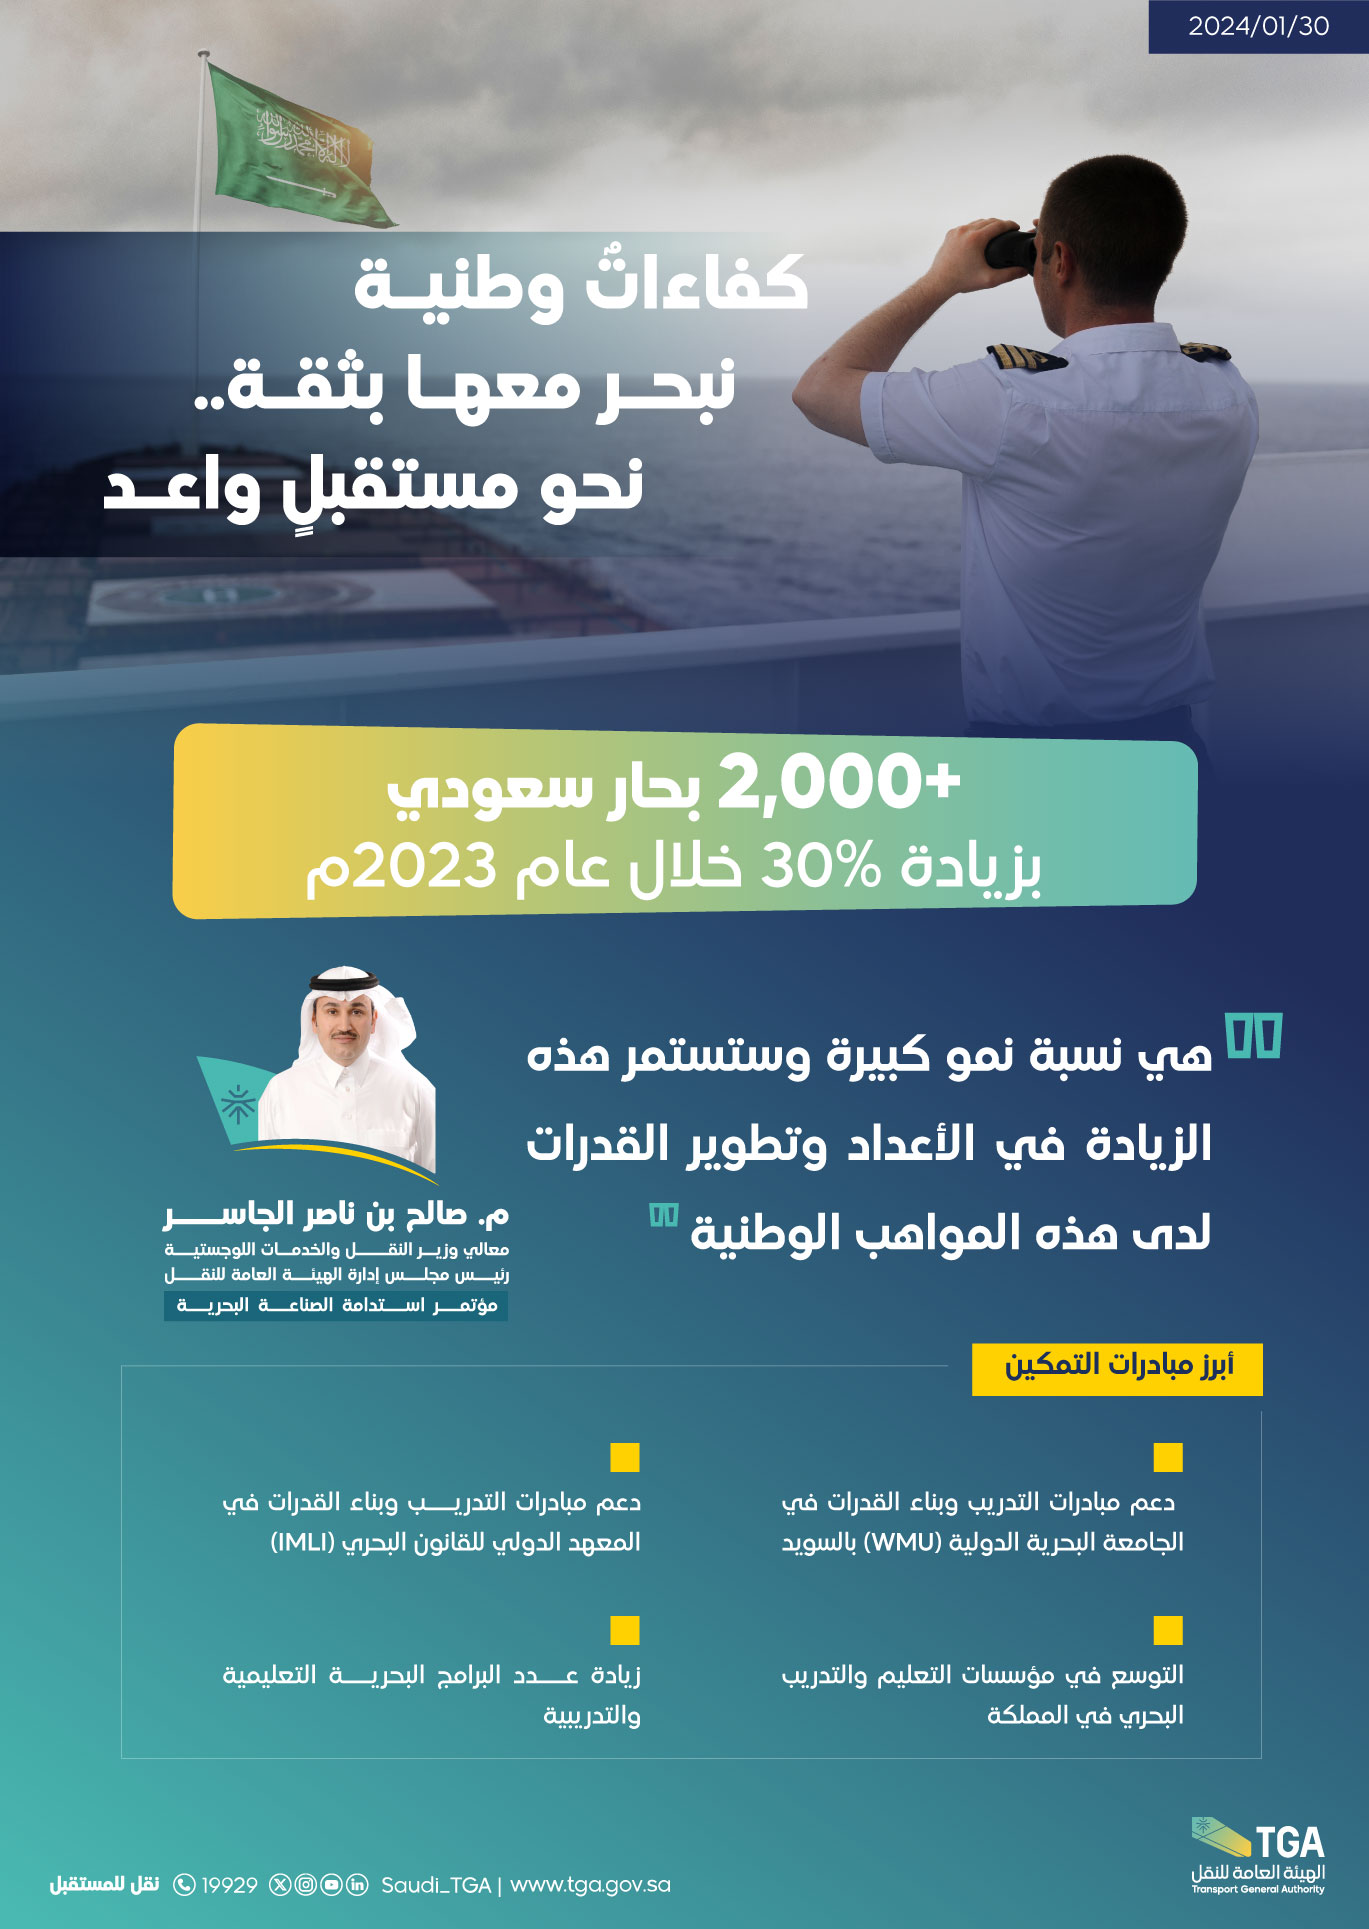 الهيئة العامة للنقل: 30% نسبة زيادة عدد البحارة السعوديين خلال 2023م